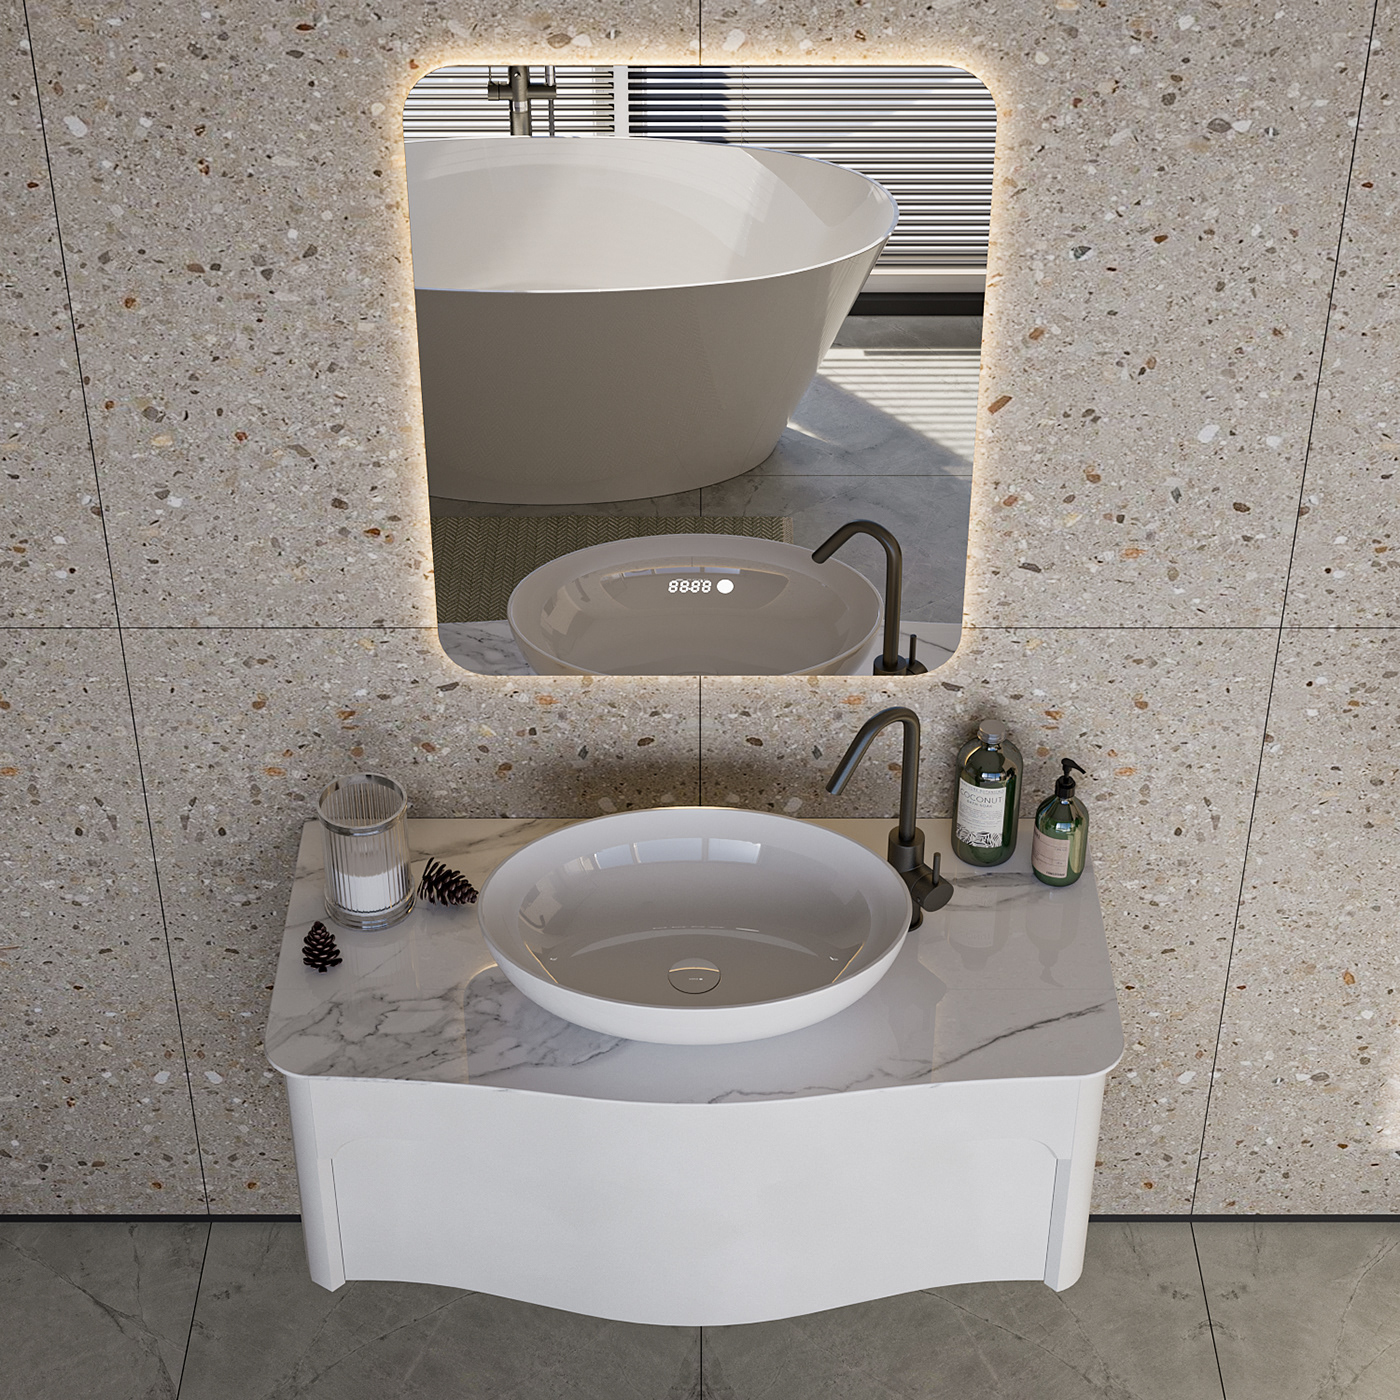 Interior visualization interior design  3ds max Render bathroom bathroom design ванная Санузел дизайн интерьера